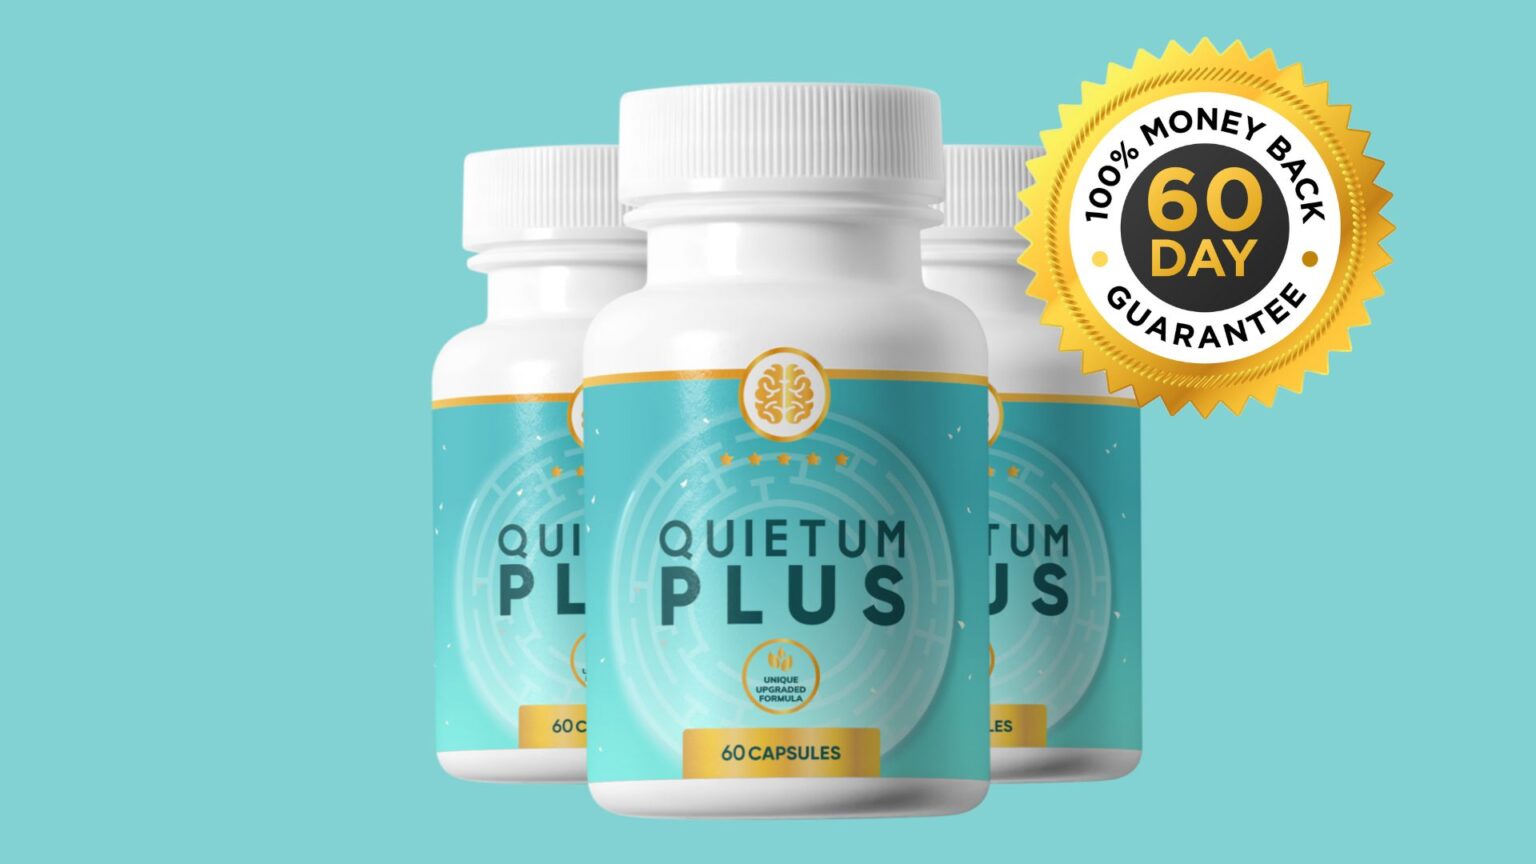 Buy Quietum Plus Online